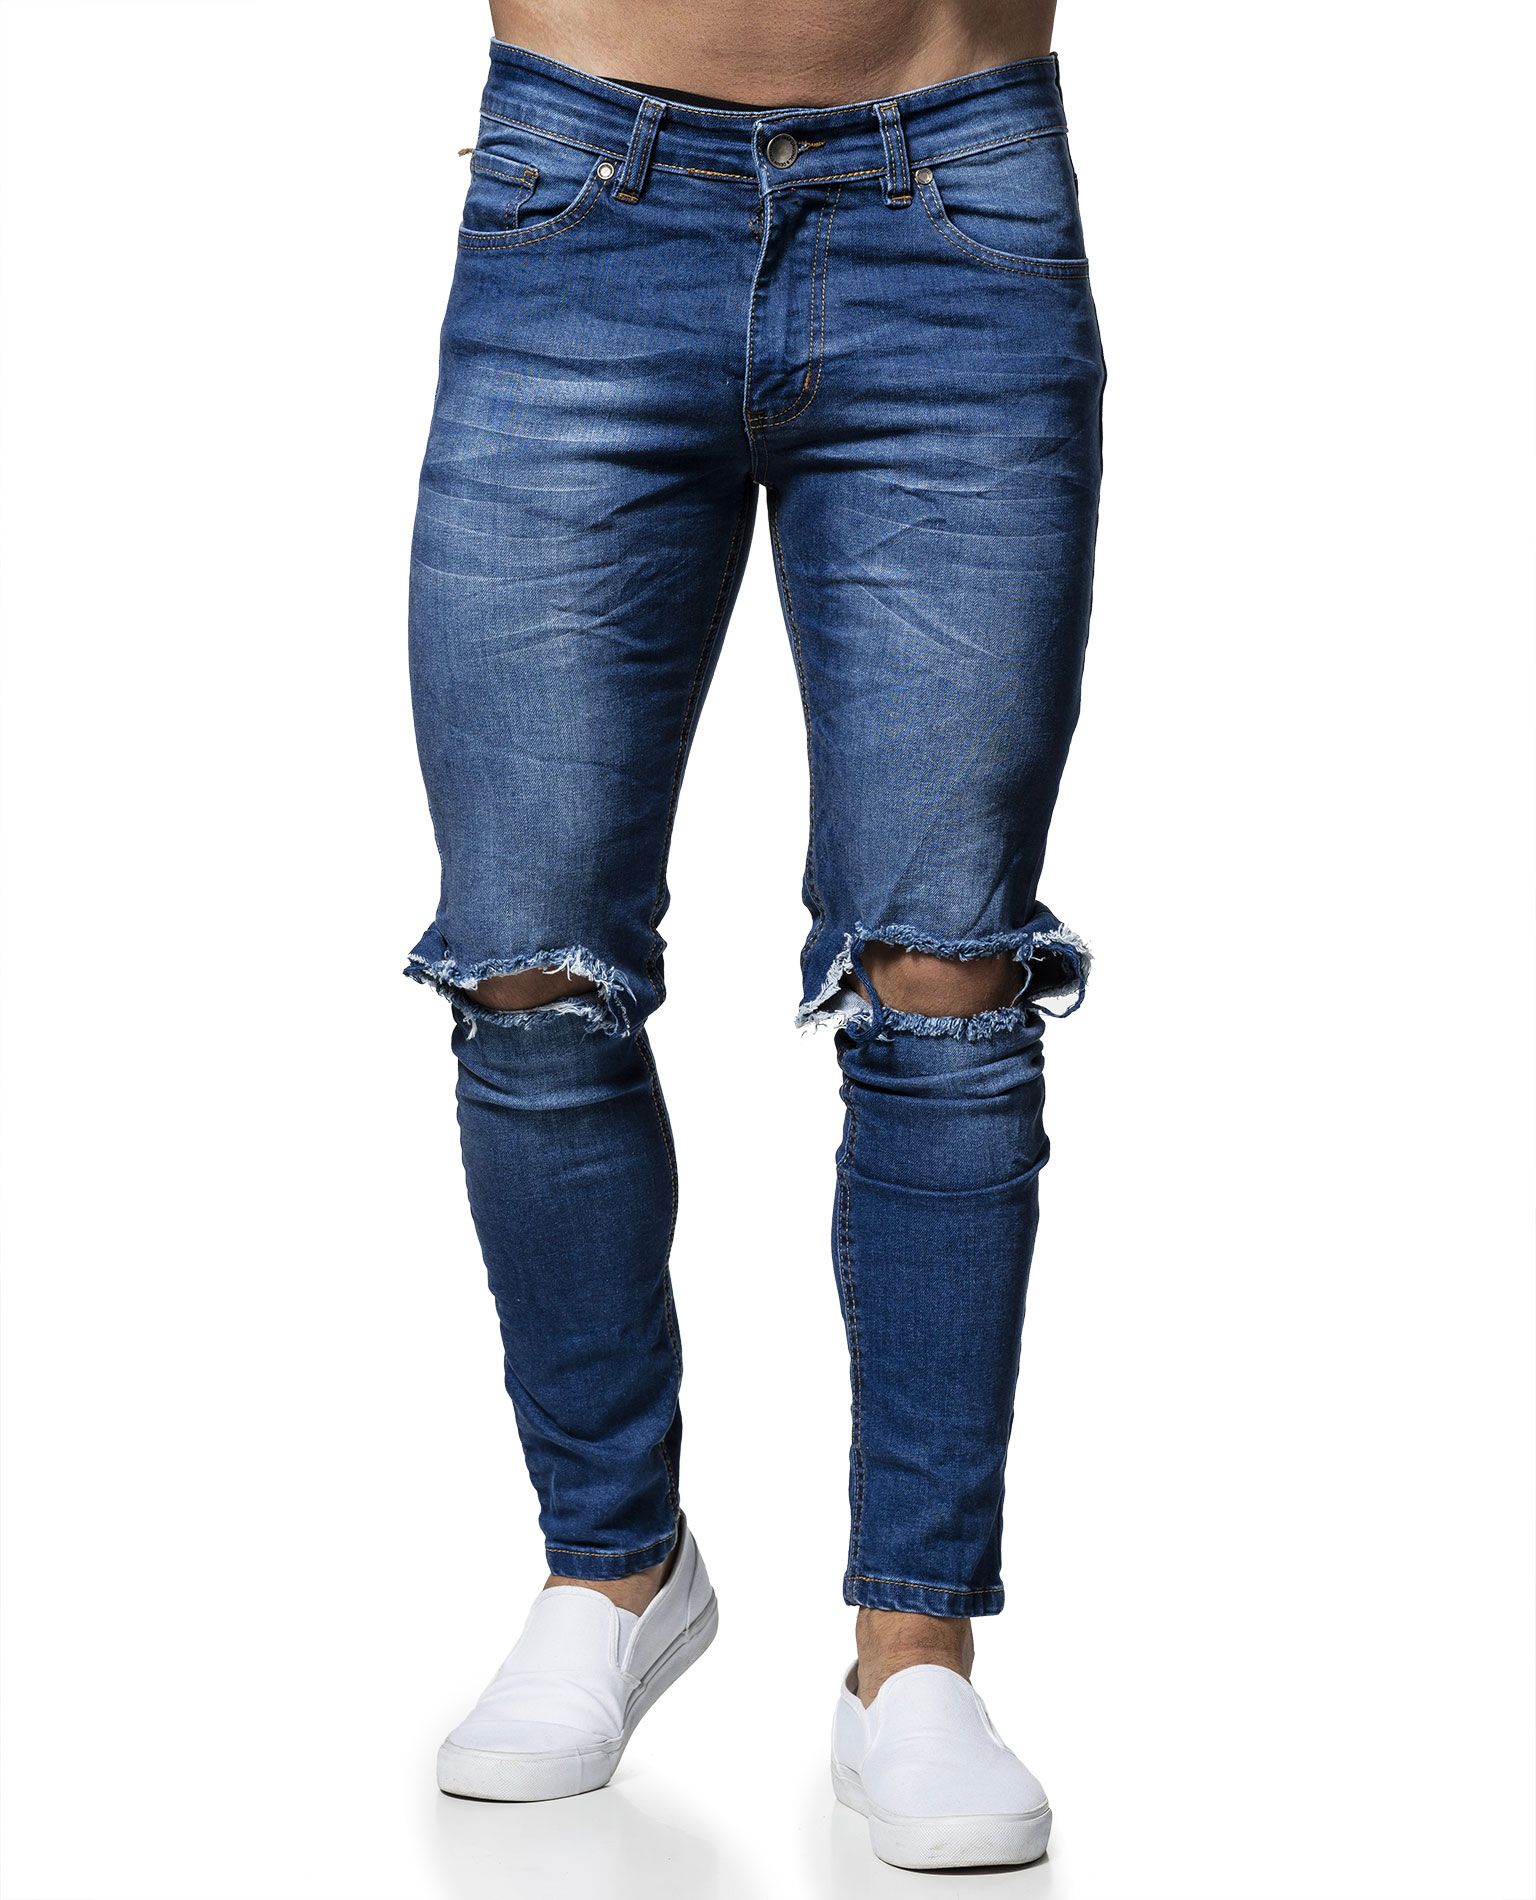 Knee Hole Jeans Blue L32 Jerone - 5130 - Jeans - Jerone